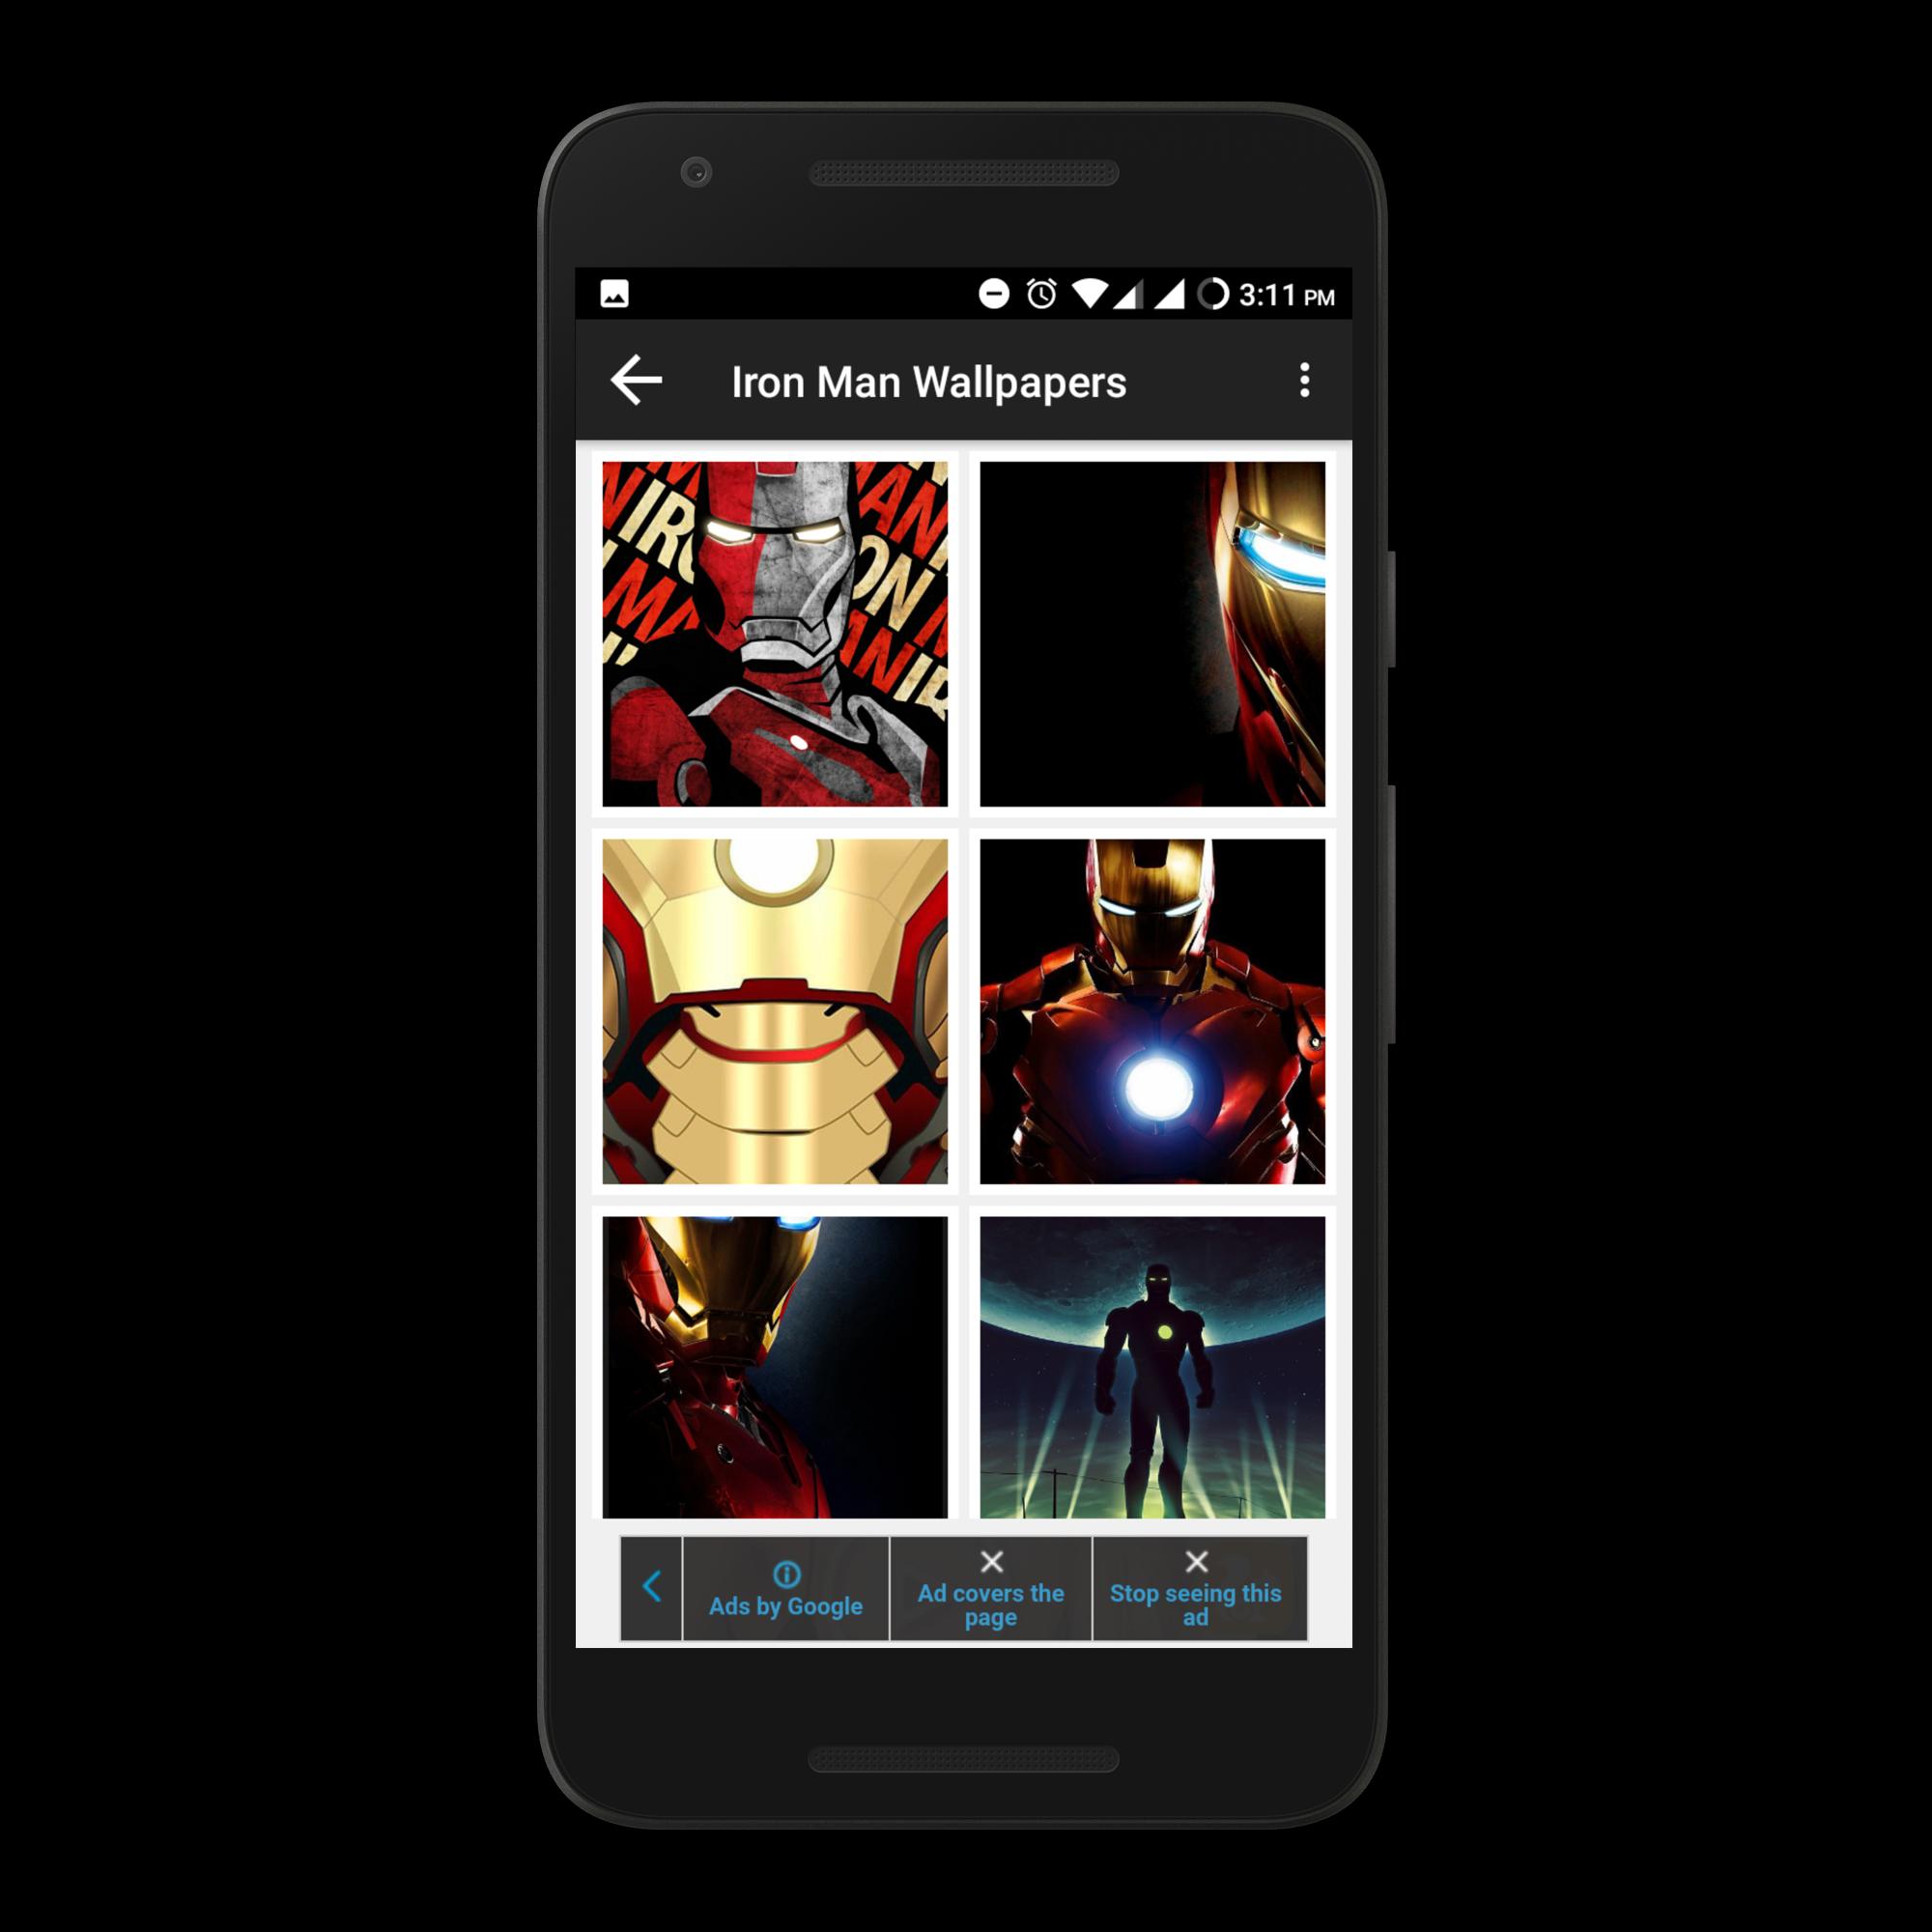 superhéroe fondos de pantalla hd para android,hombre de acero,personaje de ficción,superhéroe,dispositivo de comunicación,dispositivo de comunicaciones portátil